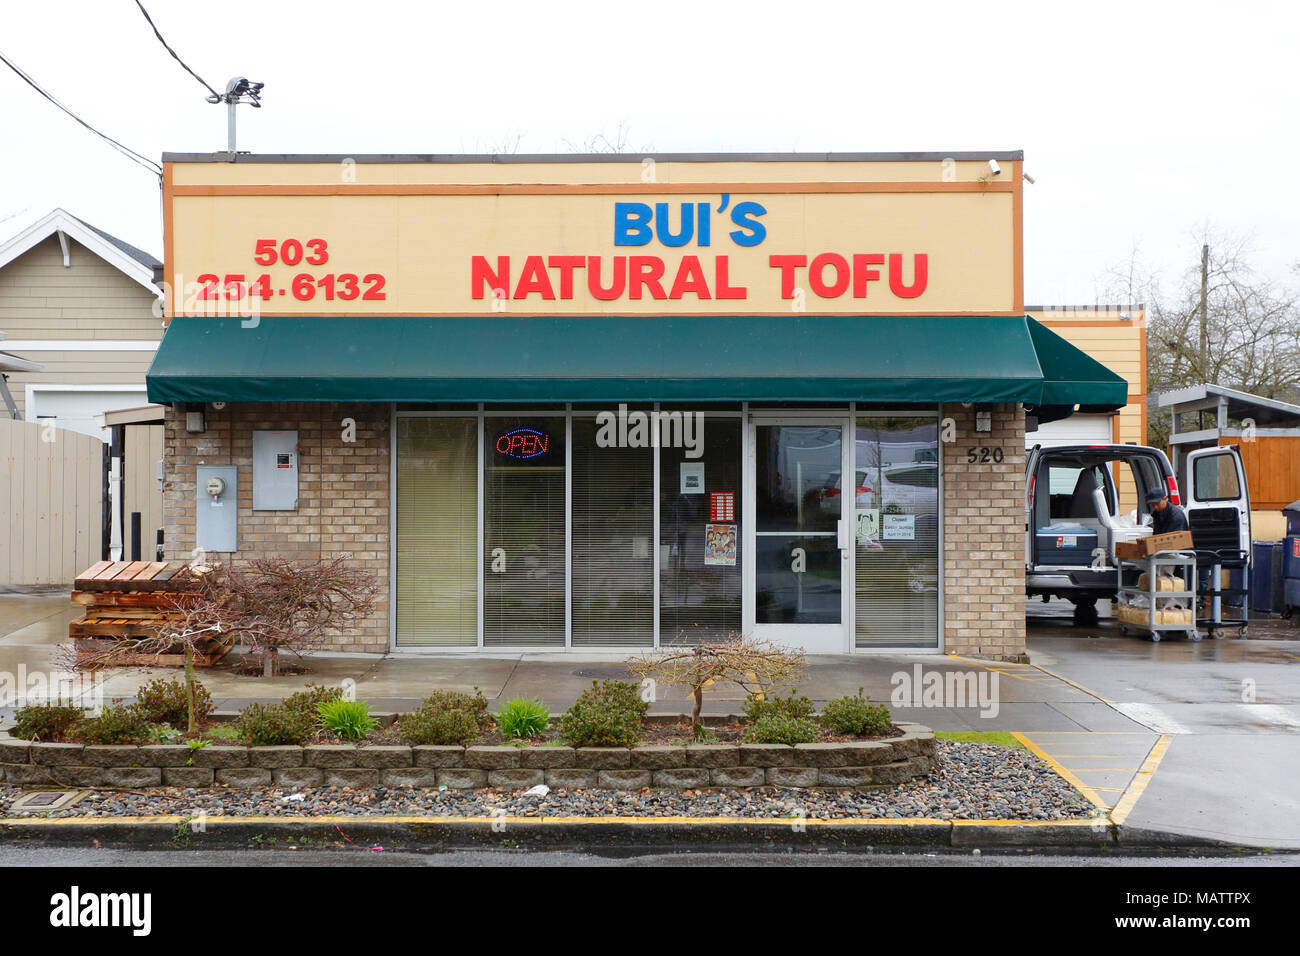 Bui's Natural tofu, 520 NE 76th Ave, Portland, Oregon. Facciata esterna di un negozio di tofu nel quartiere di Montavilla. Foto Stock